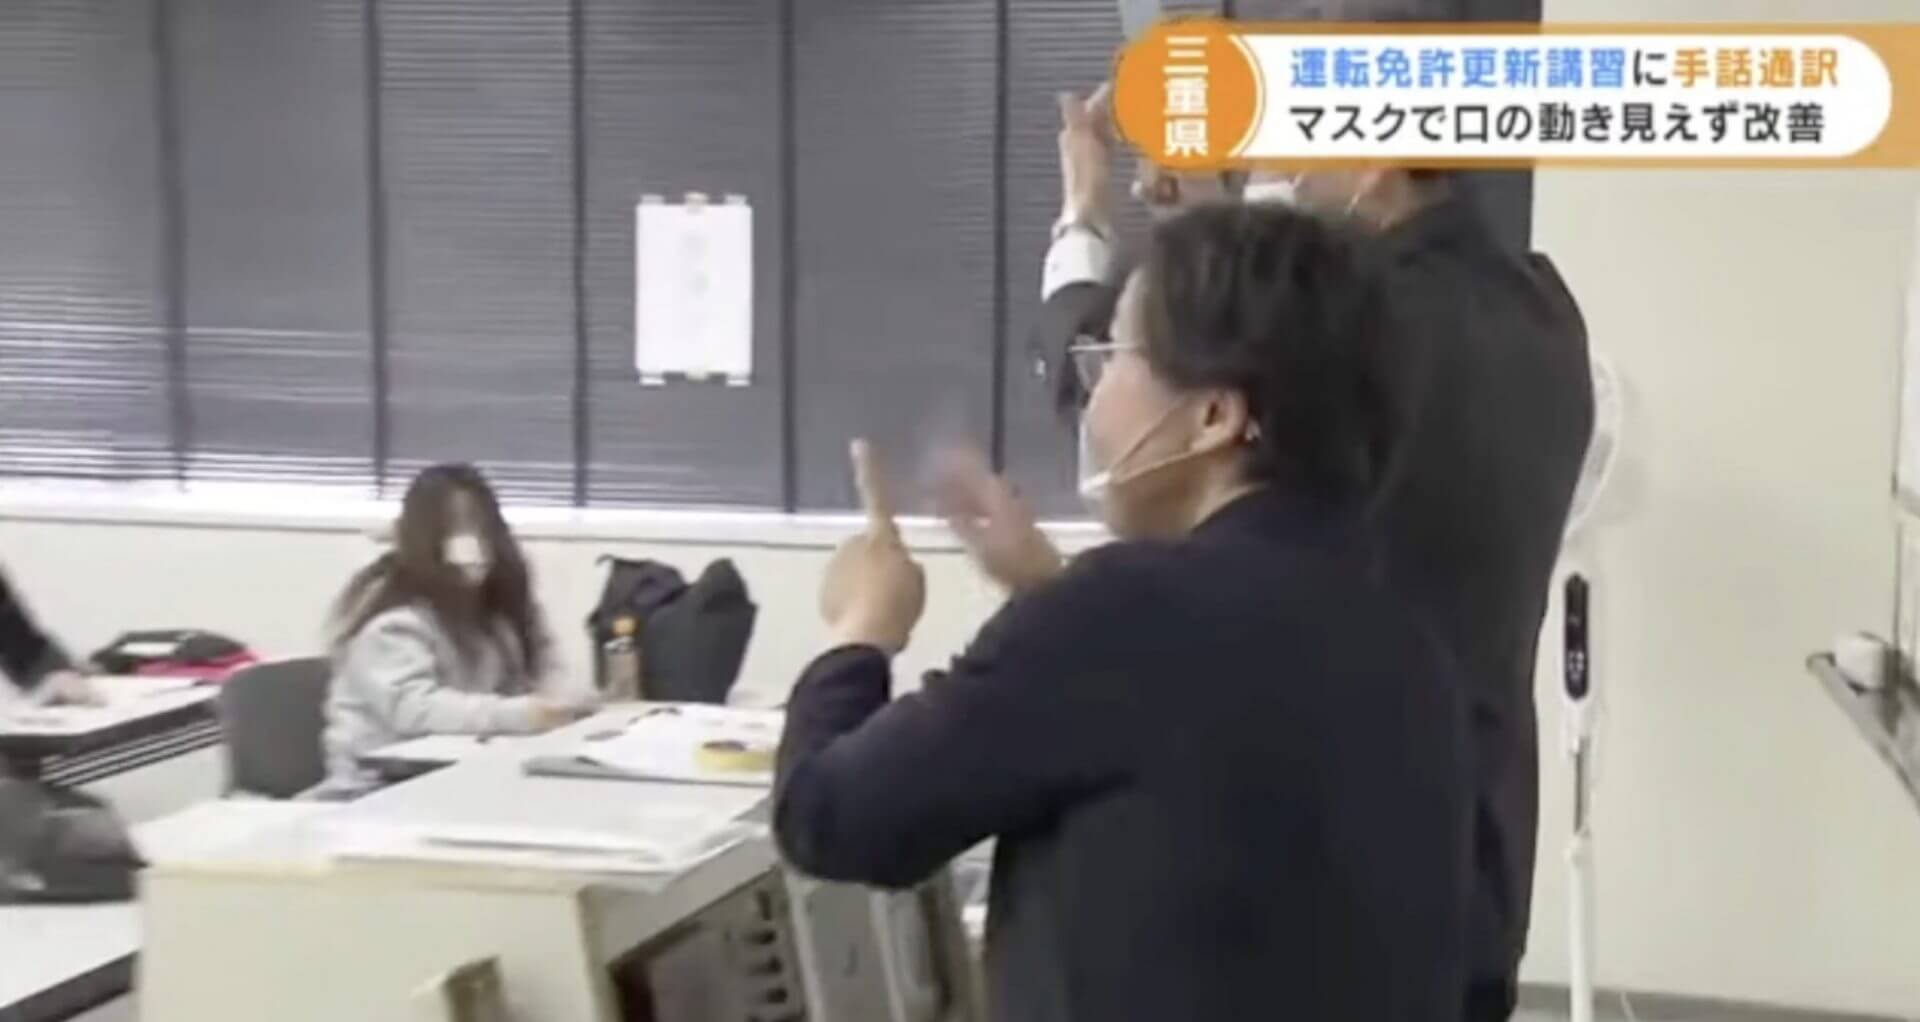 Intérprete de linguagem de sinais começa atuar no Japão, para ajudar motoristas deficientes devido ao uso de máscaras 